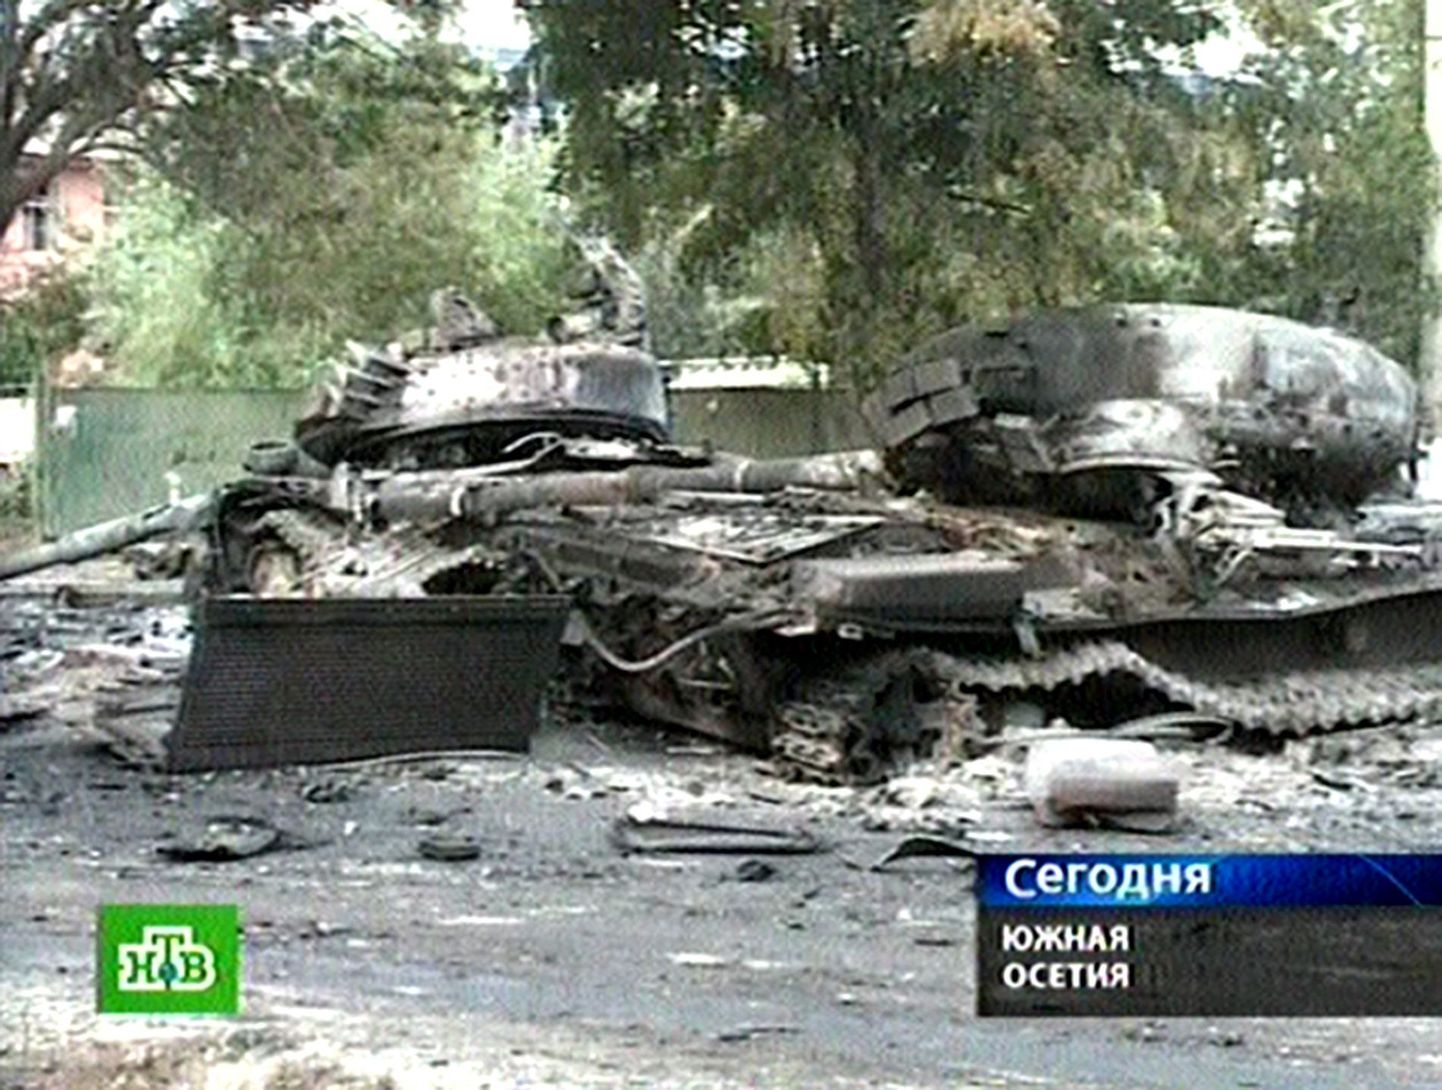 Vene telekanali vahendusel levinud kaader purustatud tankidest Tshinvalis.